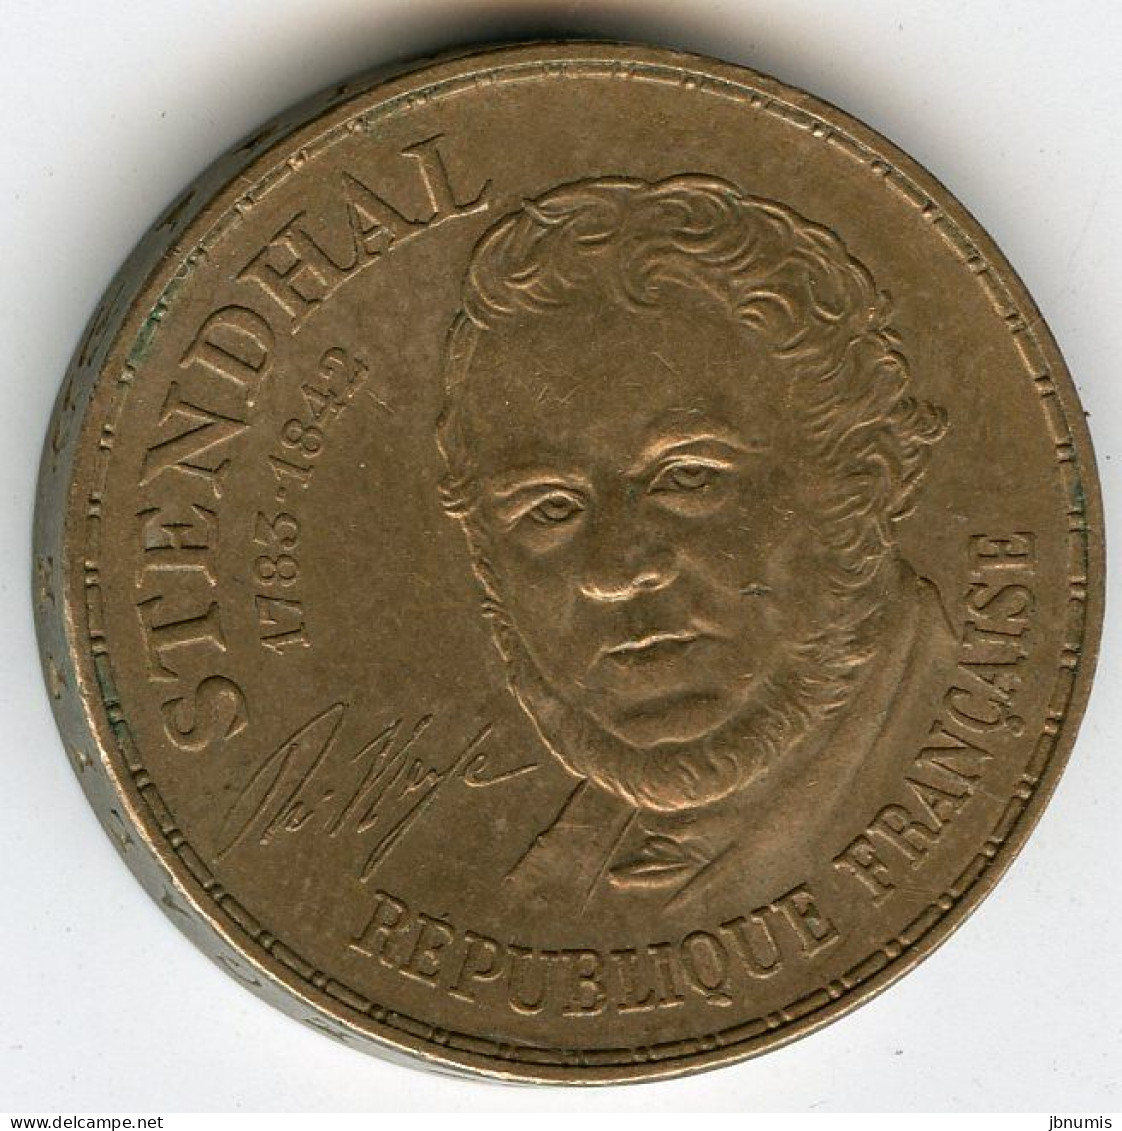 France 10 Francs 1983 Stendhal GAD 817 KM 953 - 10 Francs